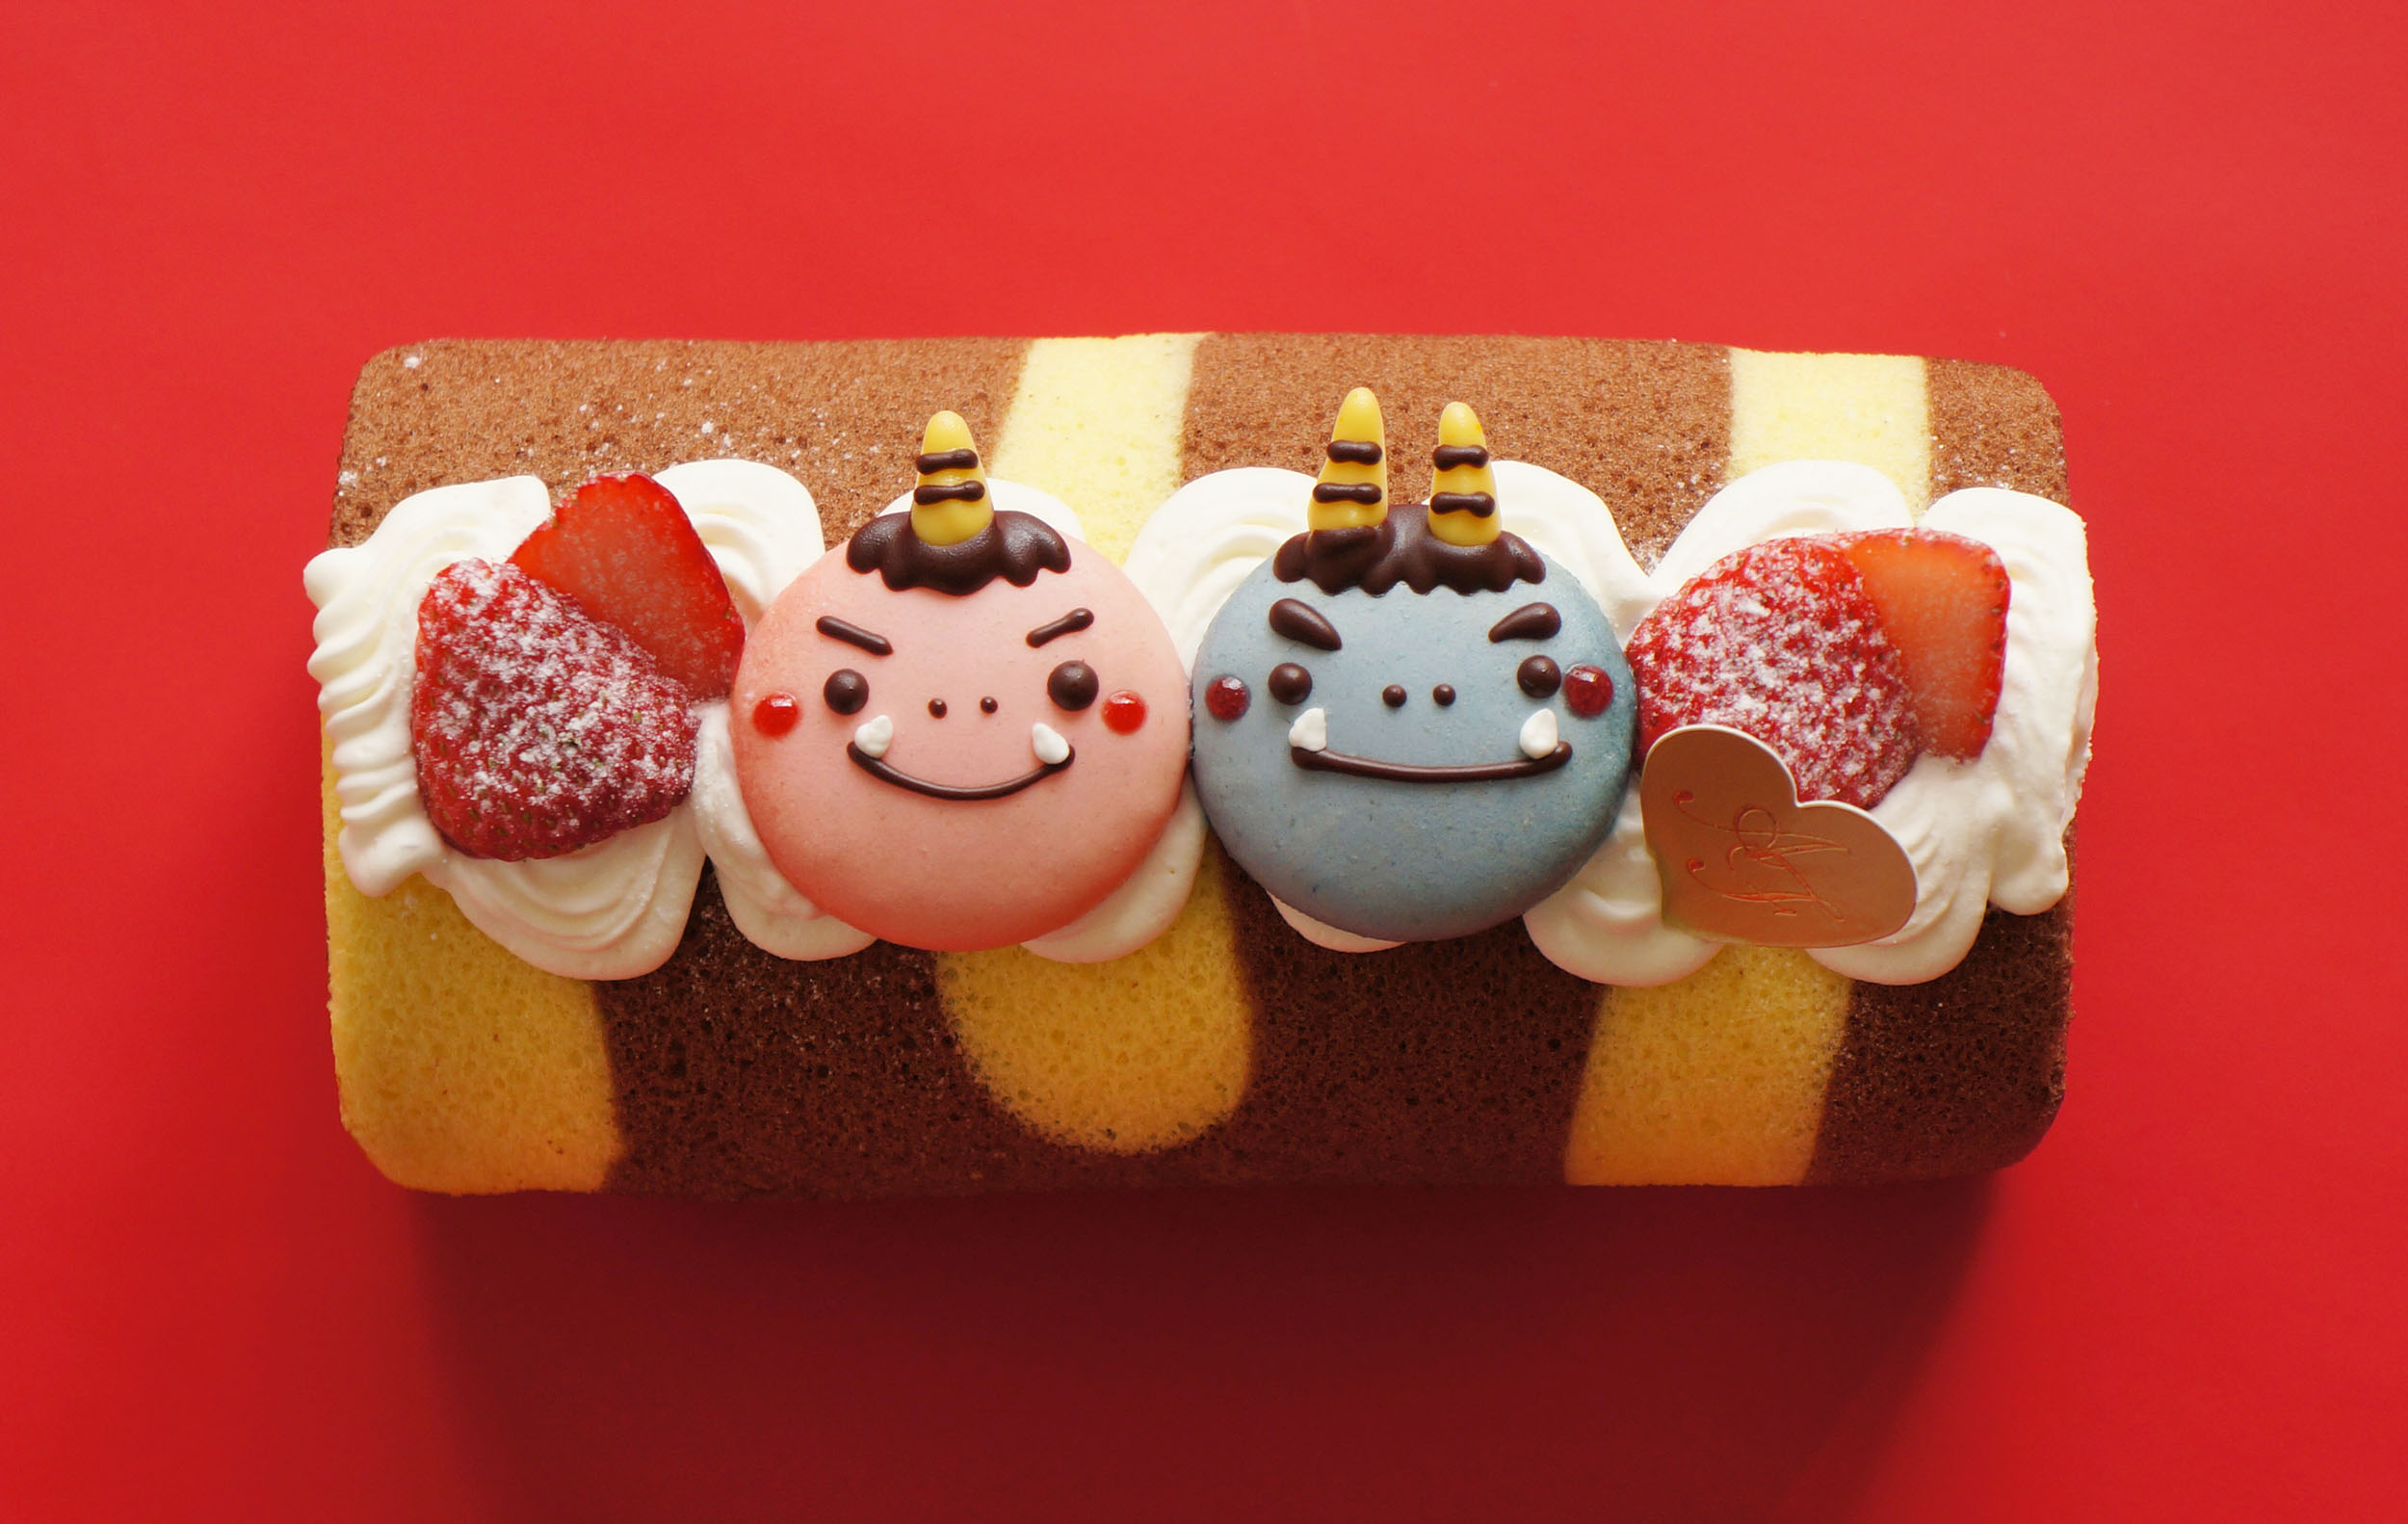 2月3日は節分の日 鬼のパンツ模様が可愛い 節分スイーツが洋菓子店 赤い風船 から誕生 株式会社九十九島グループのプレスリリース